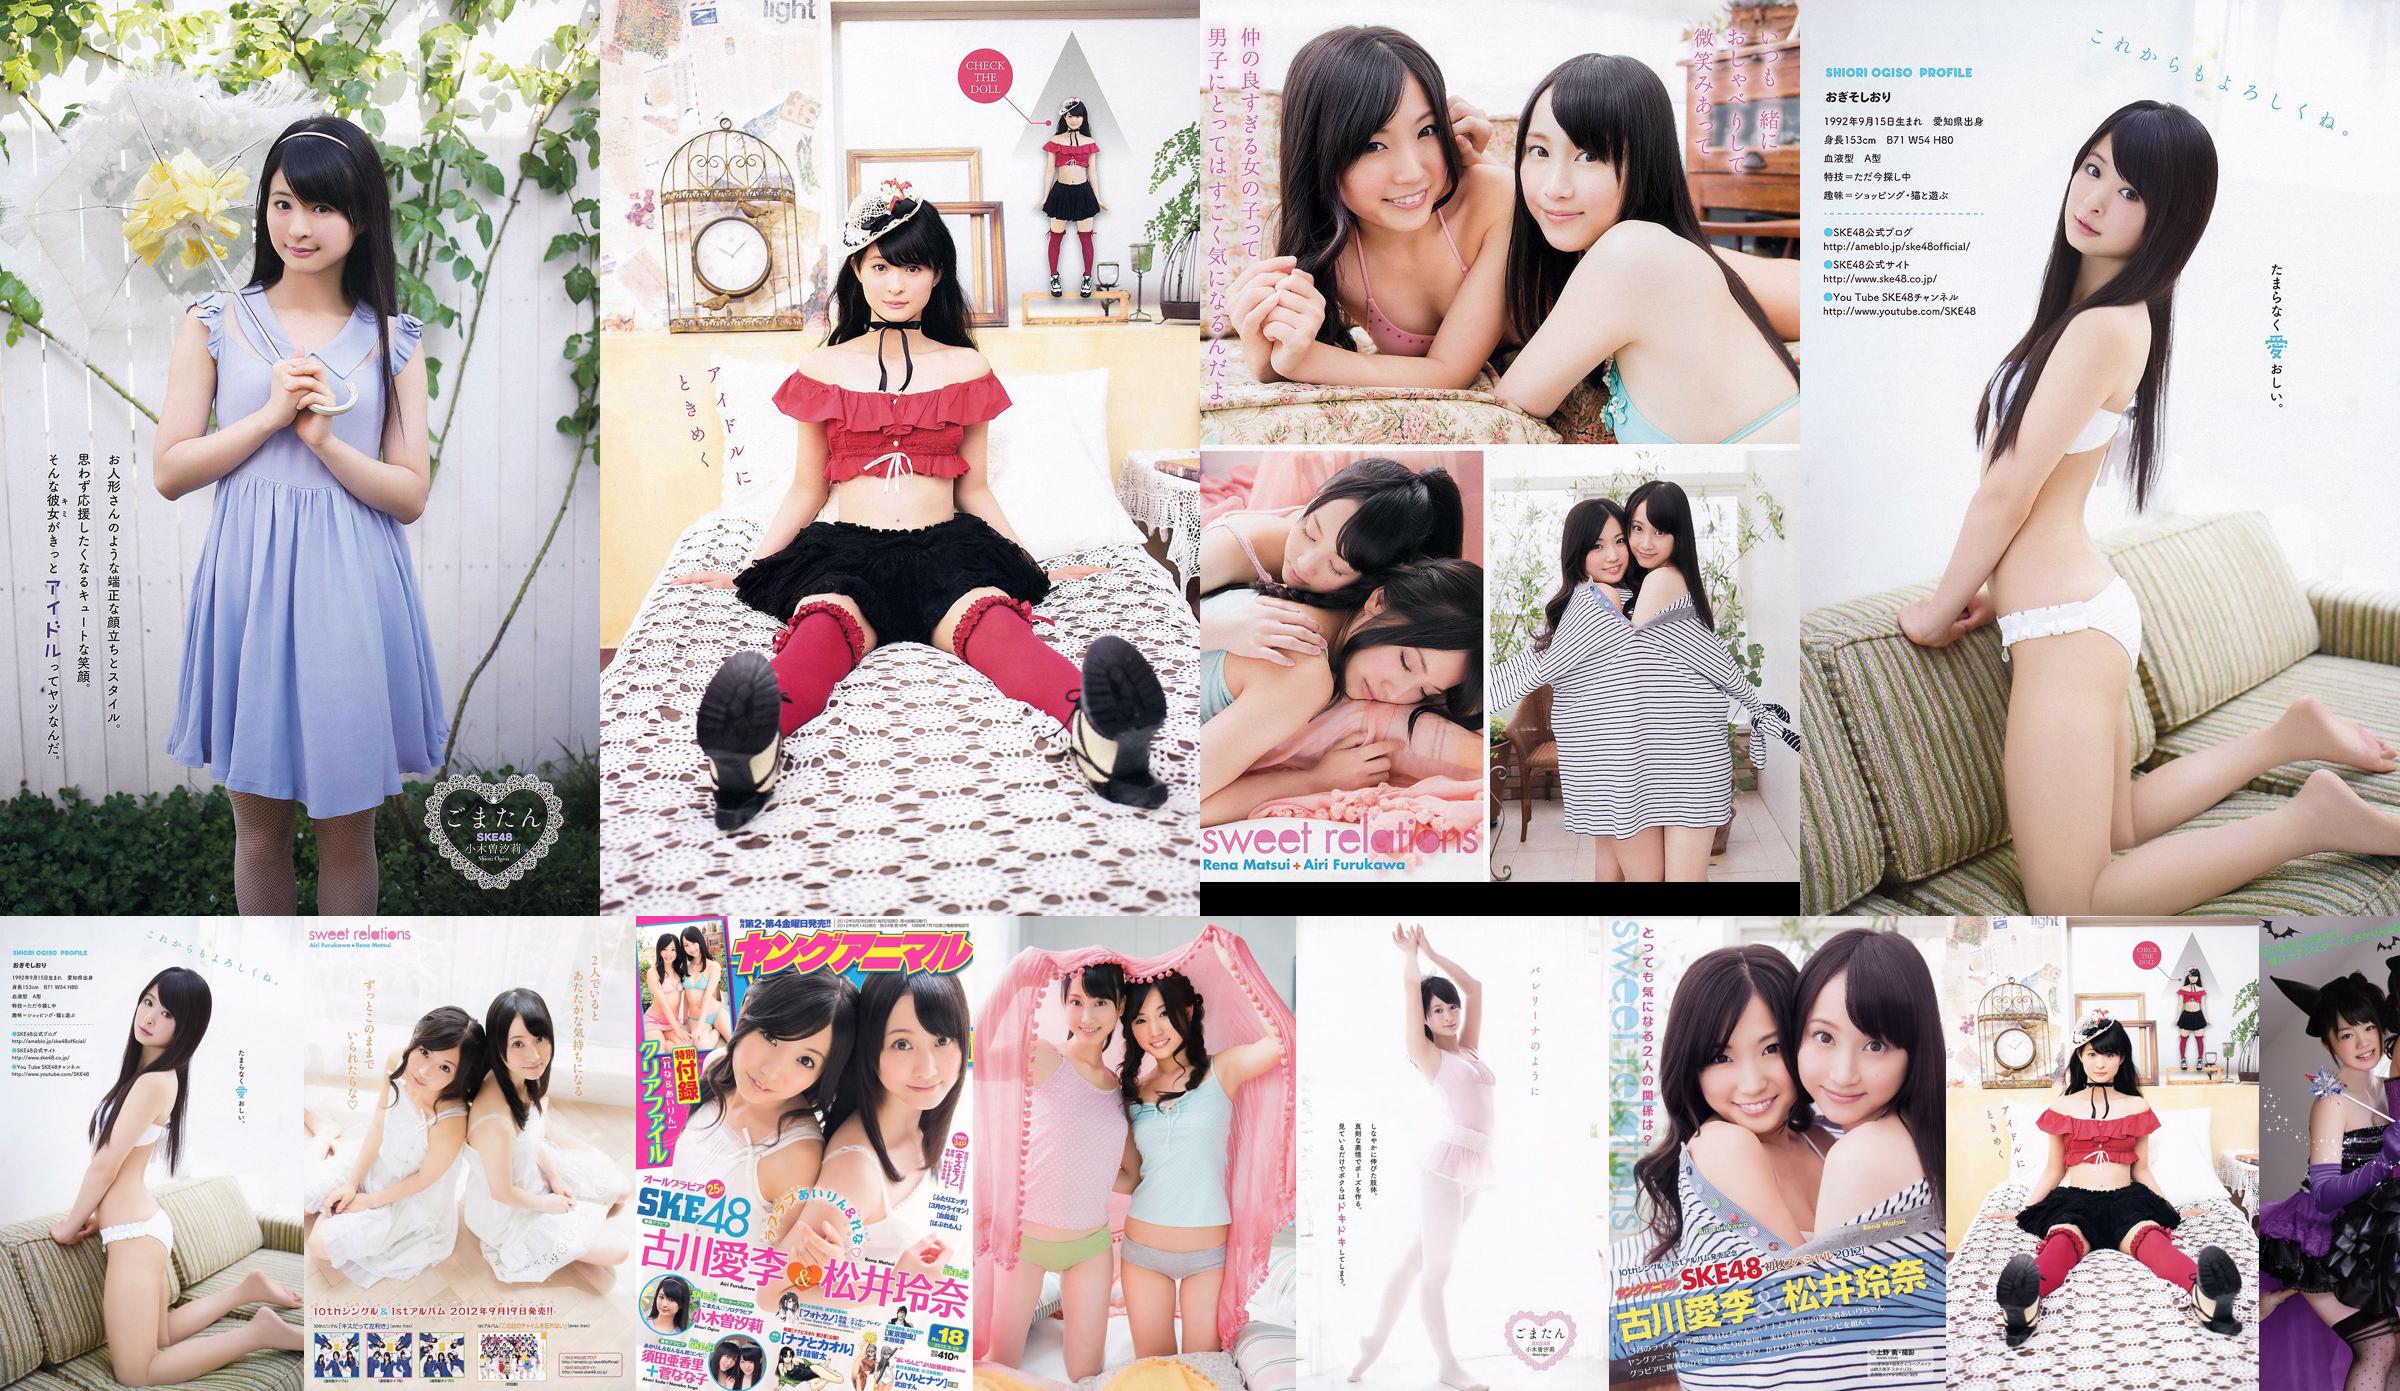 Ai Li Furukawa, Rena Matsui, Sasa Ogi, Aikari Suda [Young Animal] 2012 No.18 Photo Magazine No.b64041 หน้า 1